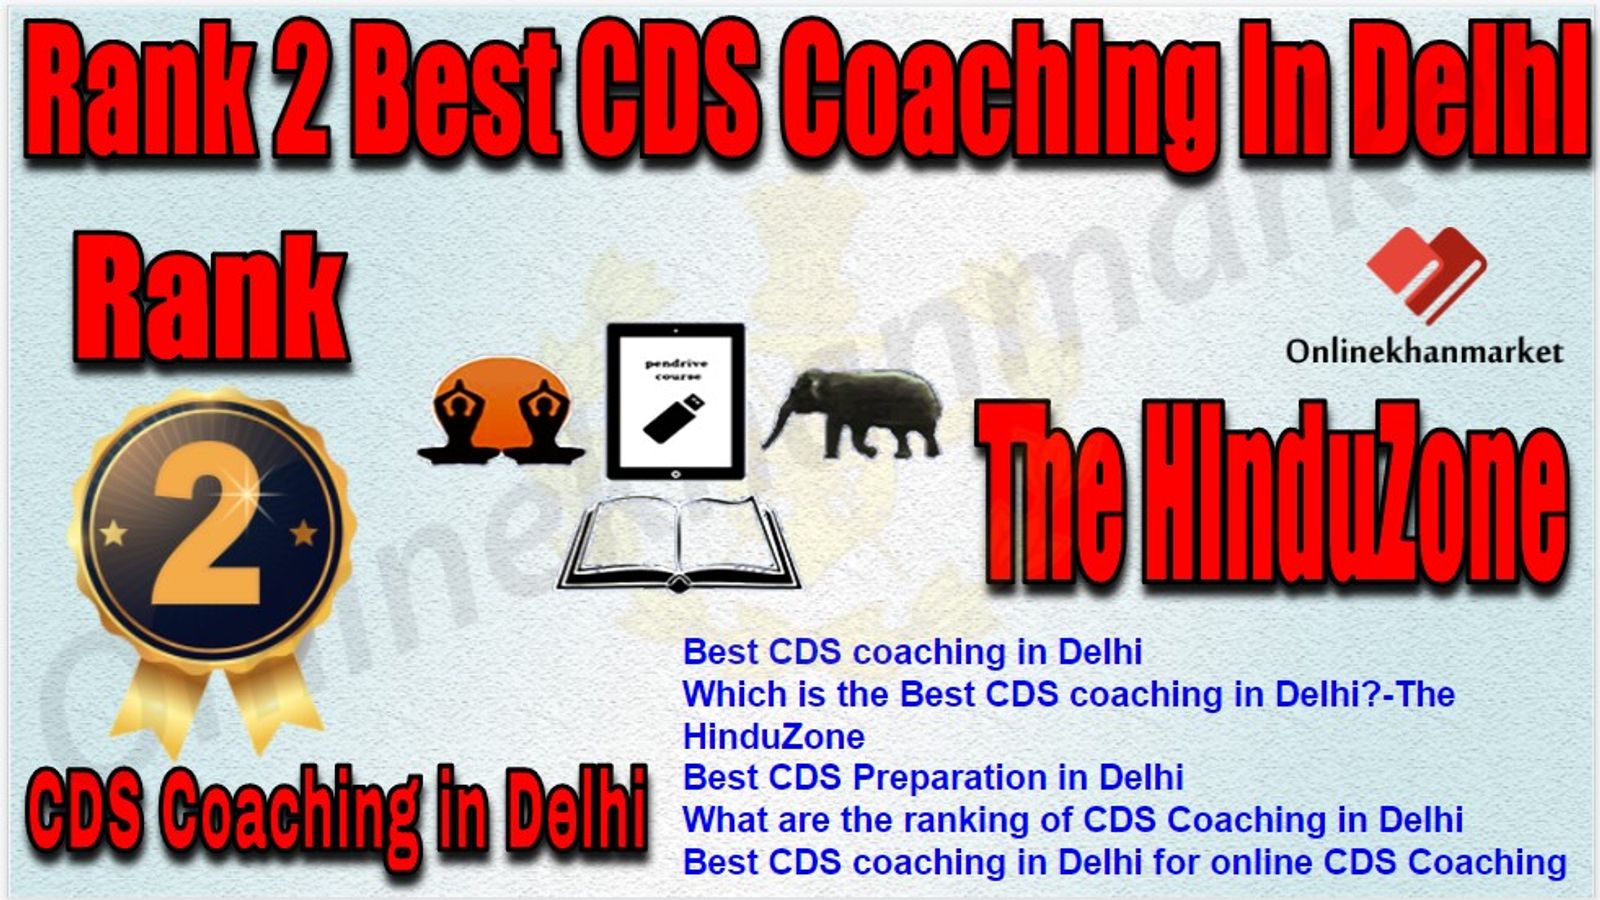 Rank 2 Best CDS Coaching in Delhi